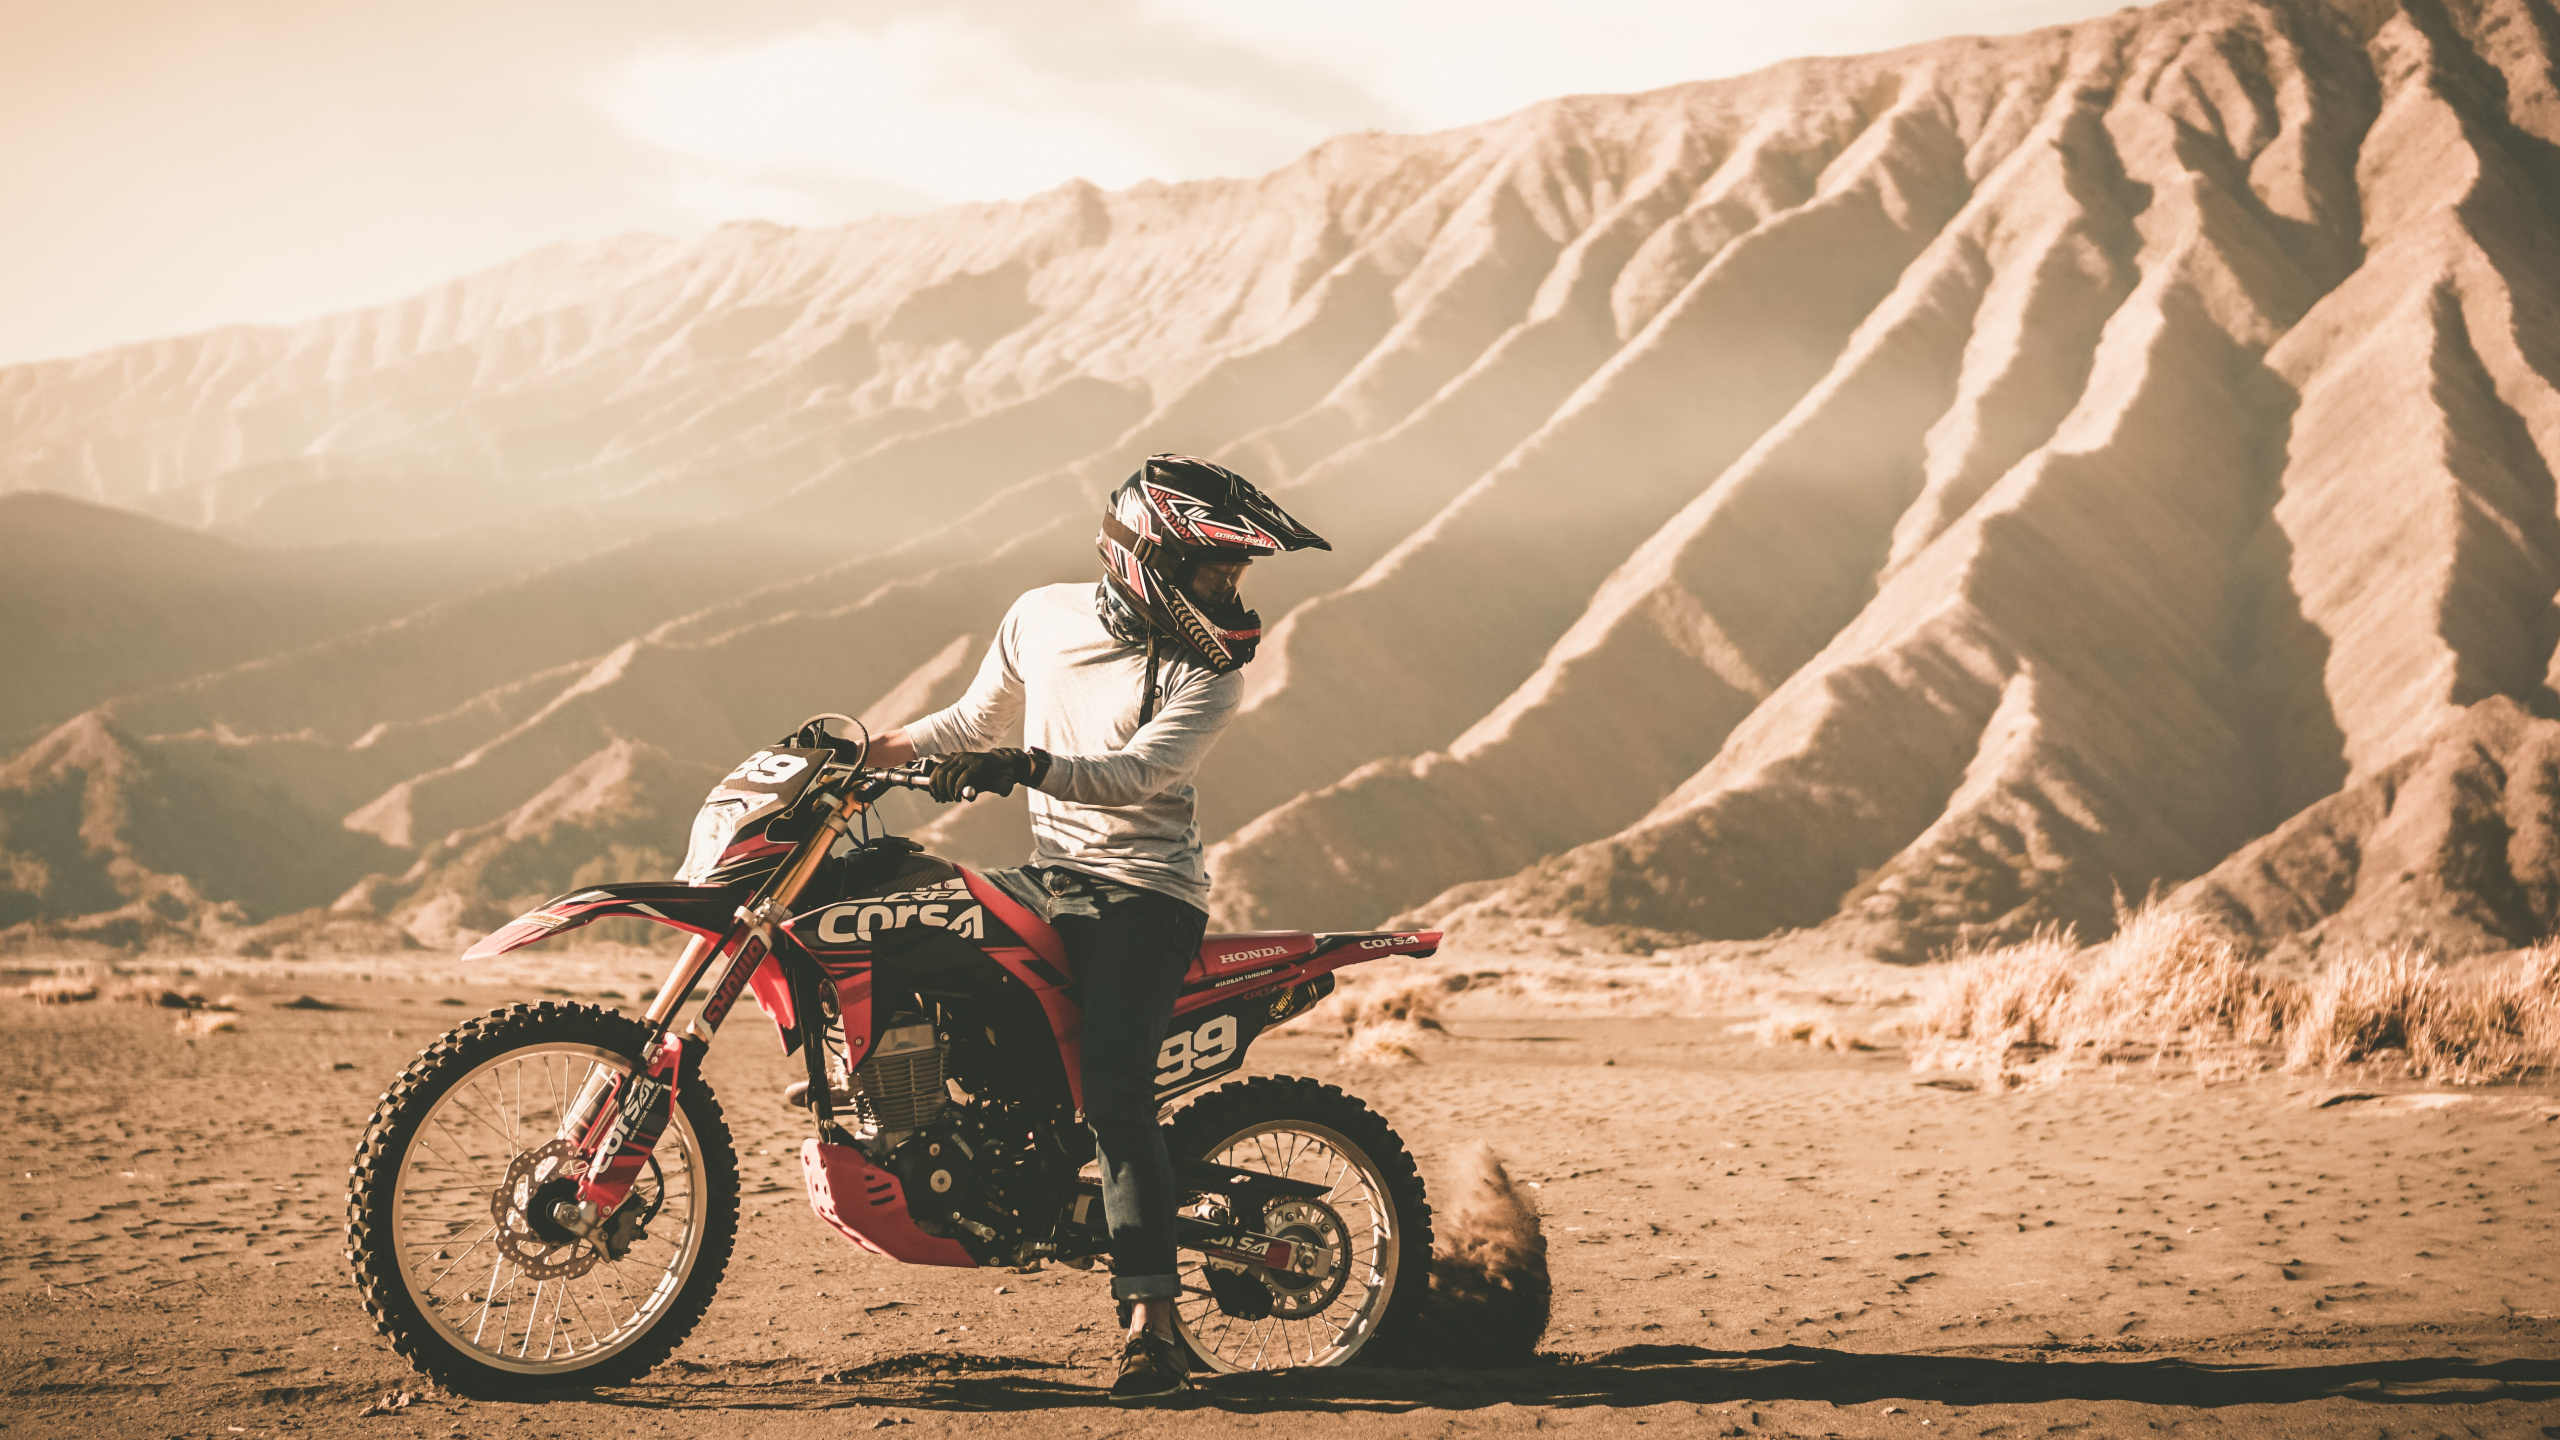 摩托车头盔, 摩托车越野赛, 越野, 耐力, 沙漠赛车 壁纸 2560x1440 允许